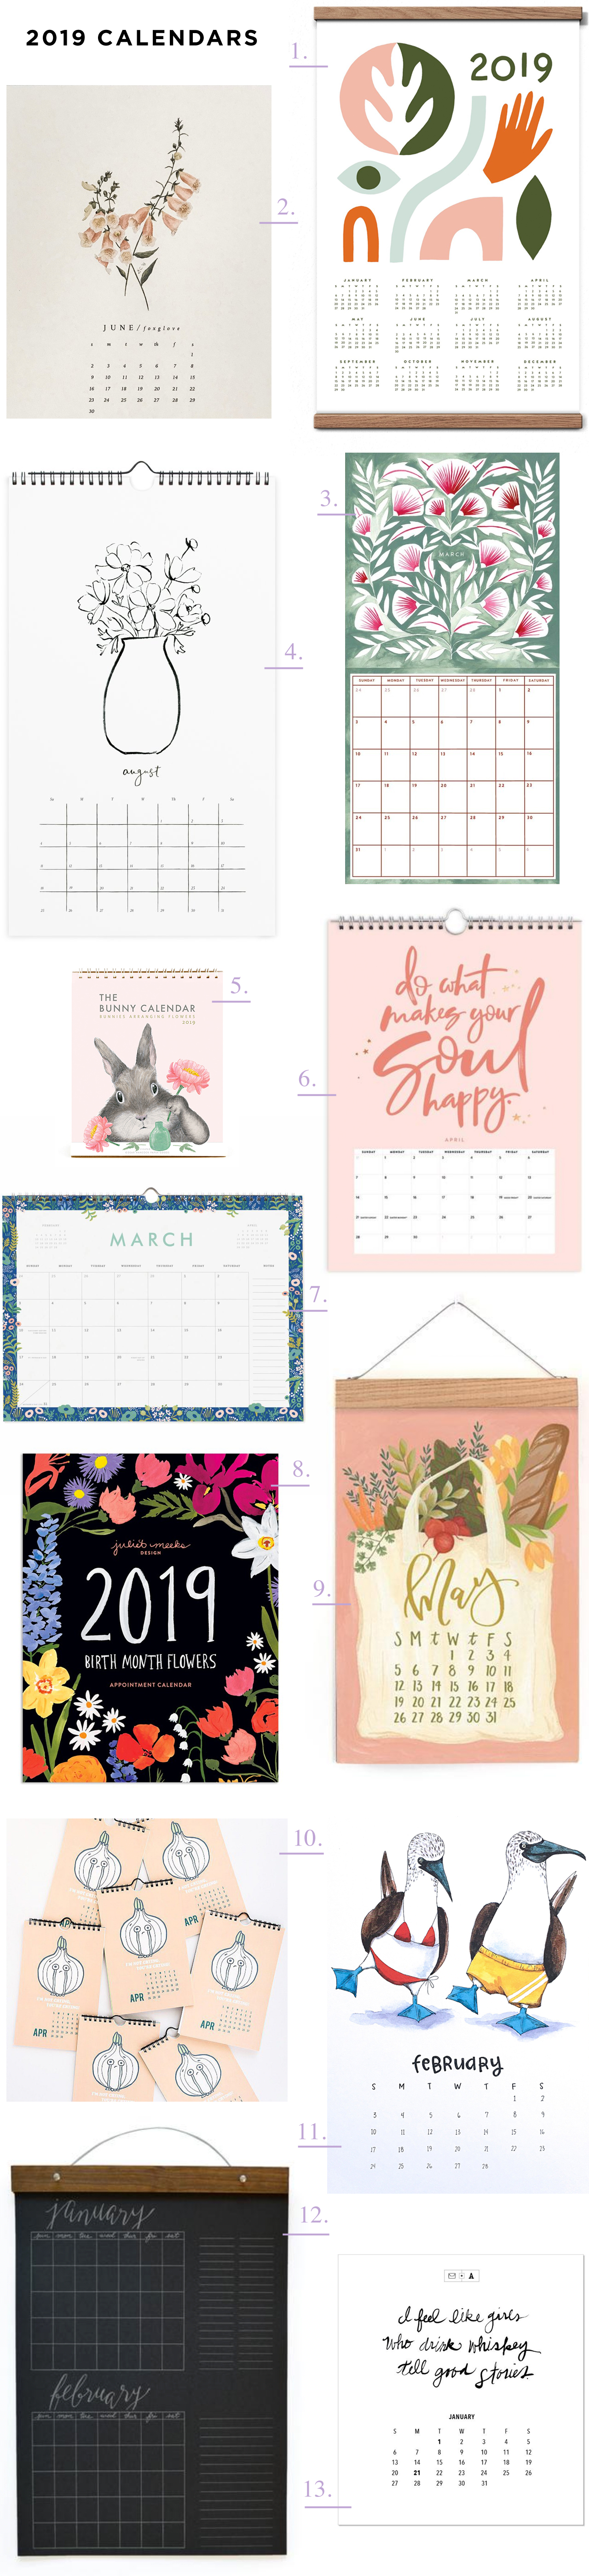 Thirteen Beautiful 2019 Calendars